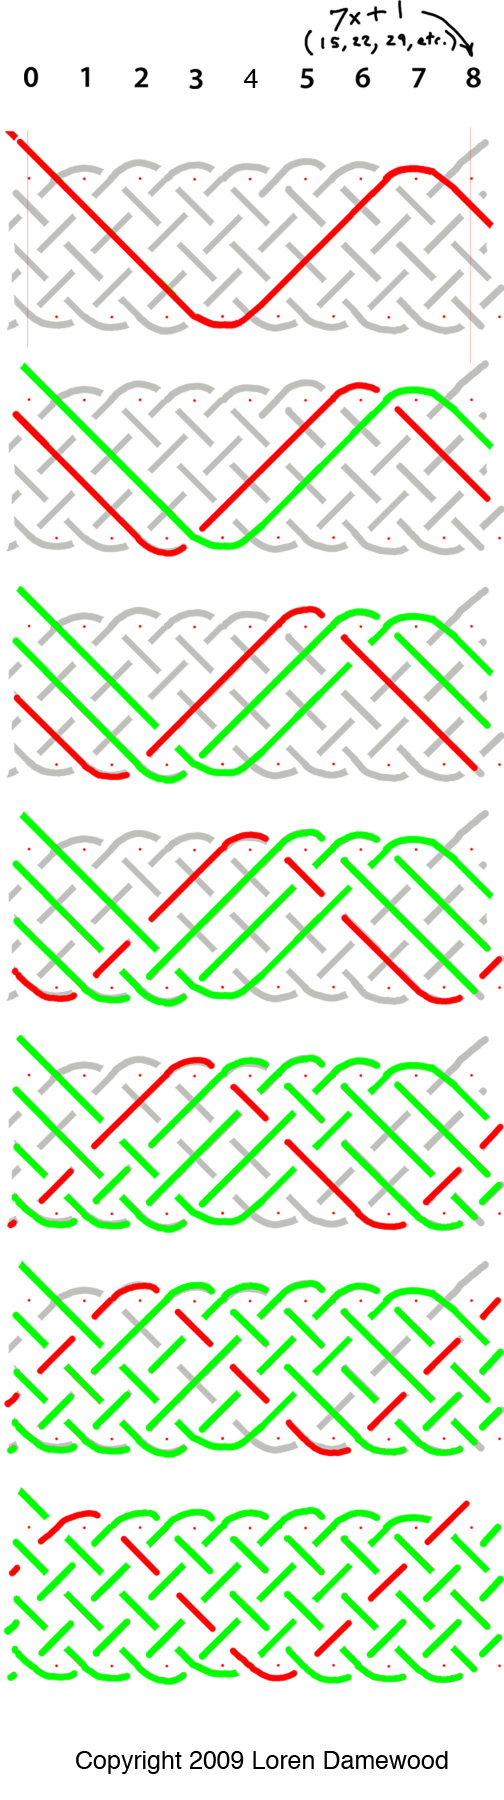 Seven-lead-plus-one pattern